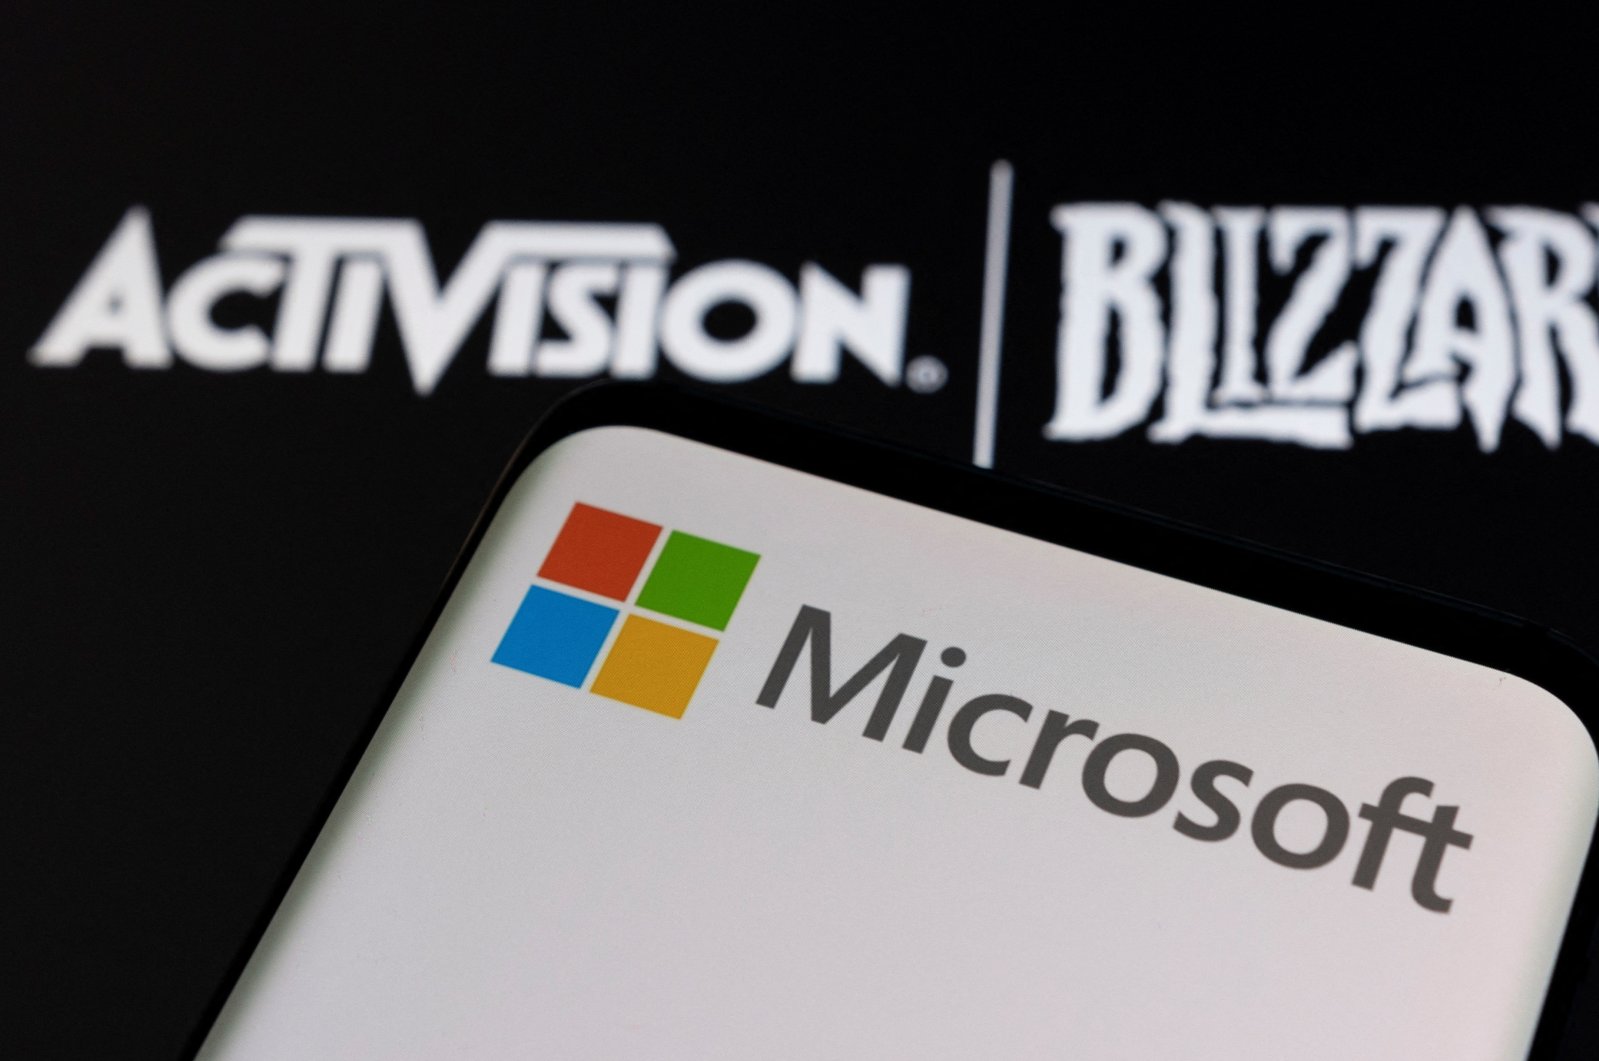 Microsoft, Activision Blizzard berurusan untuk menghadapi uji antimonopoli